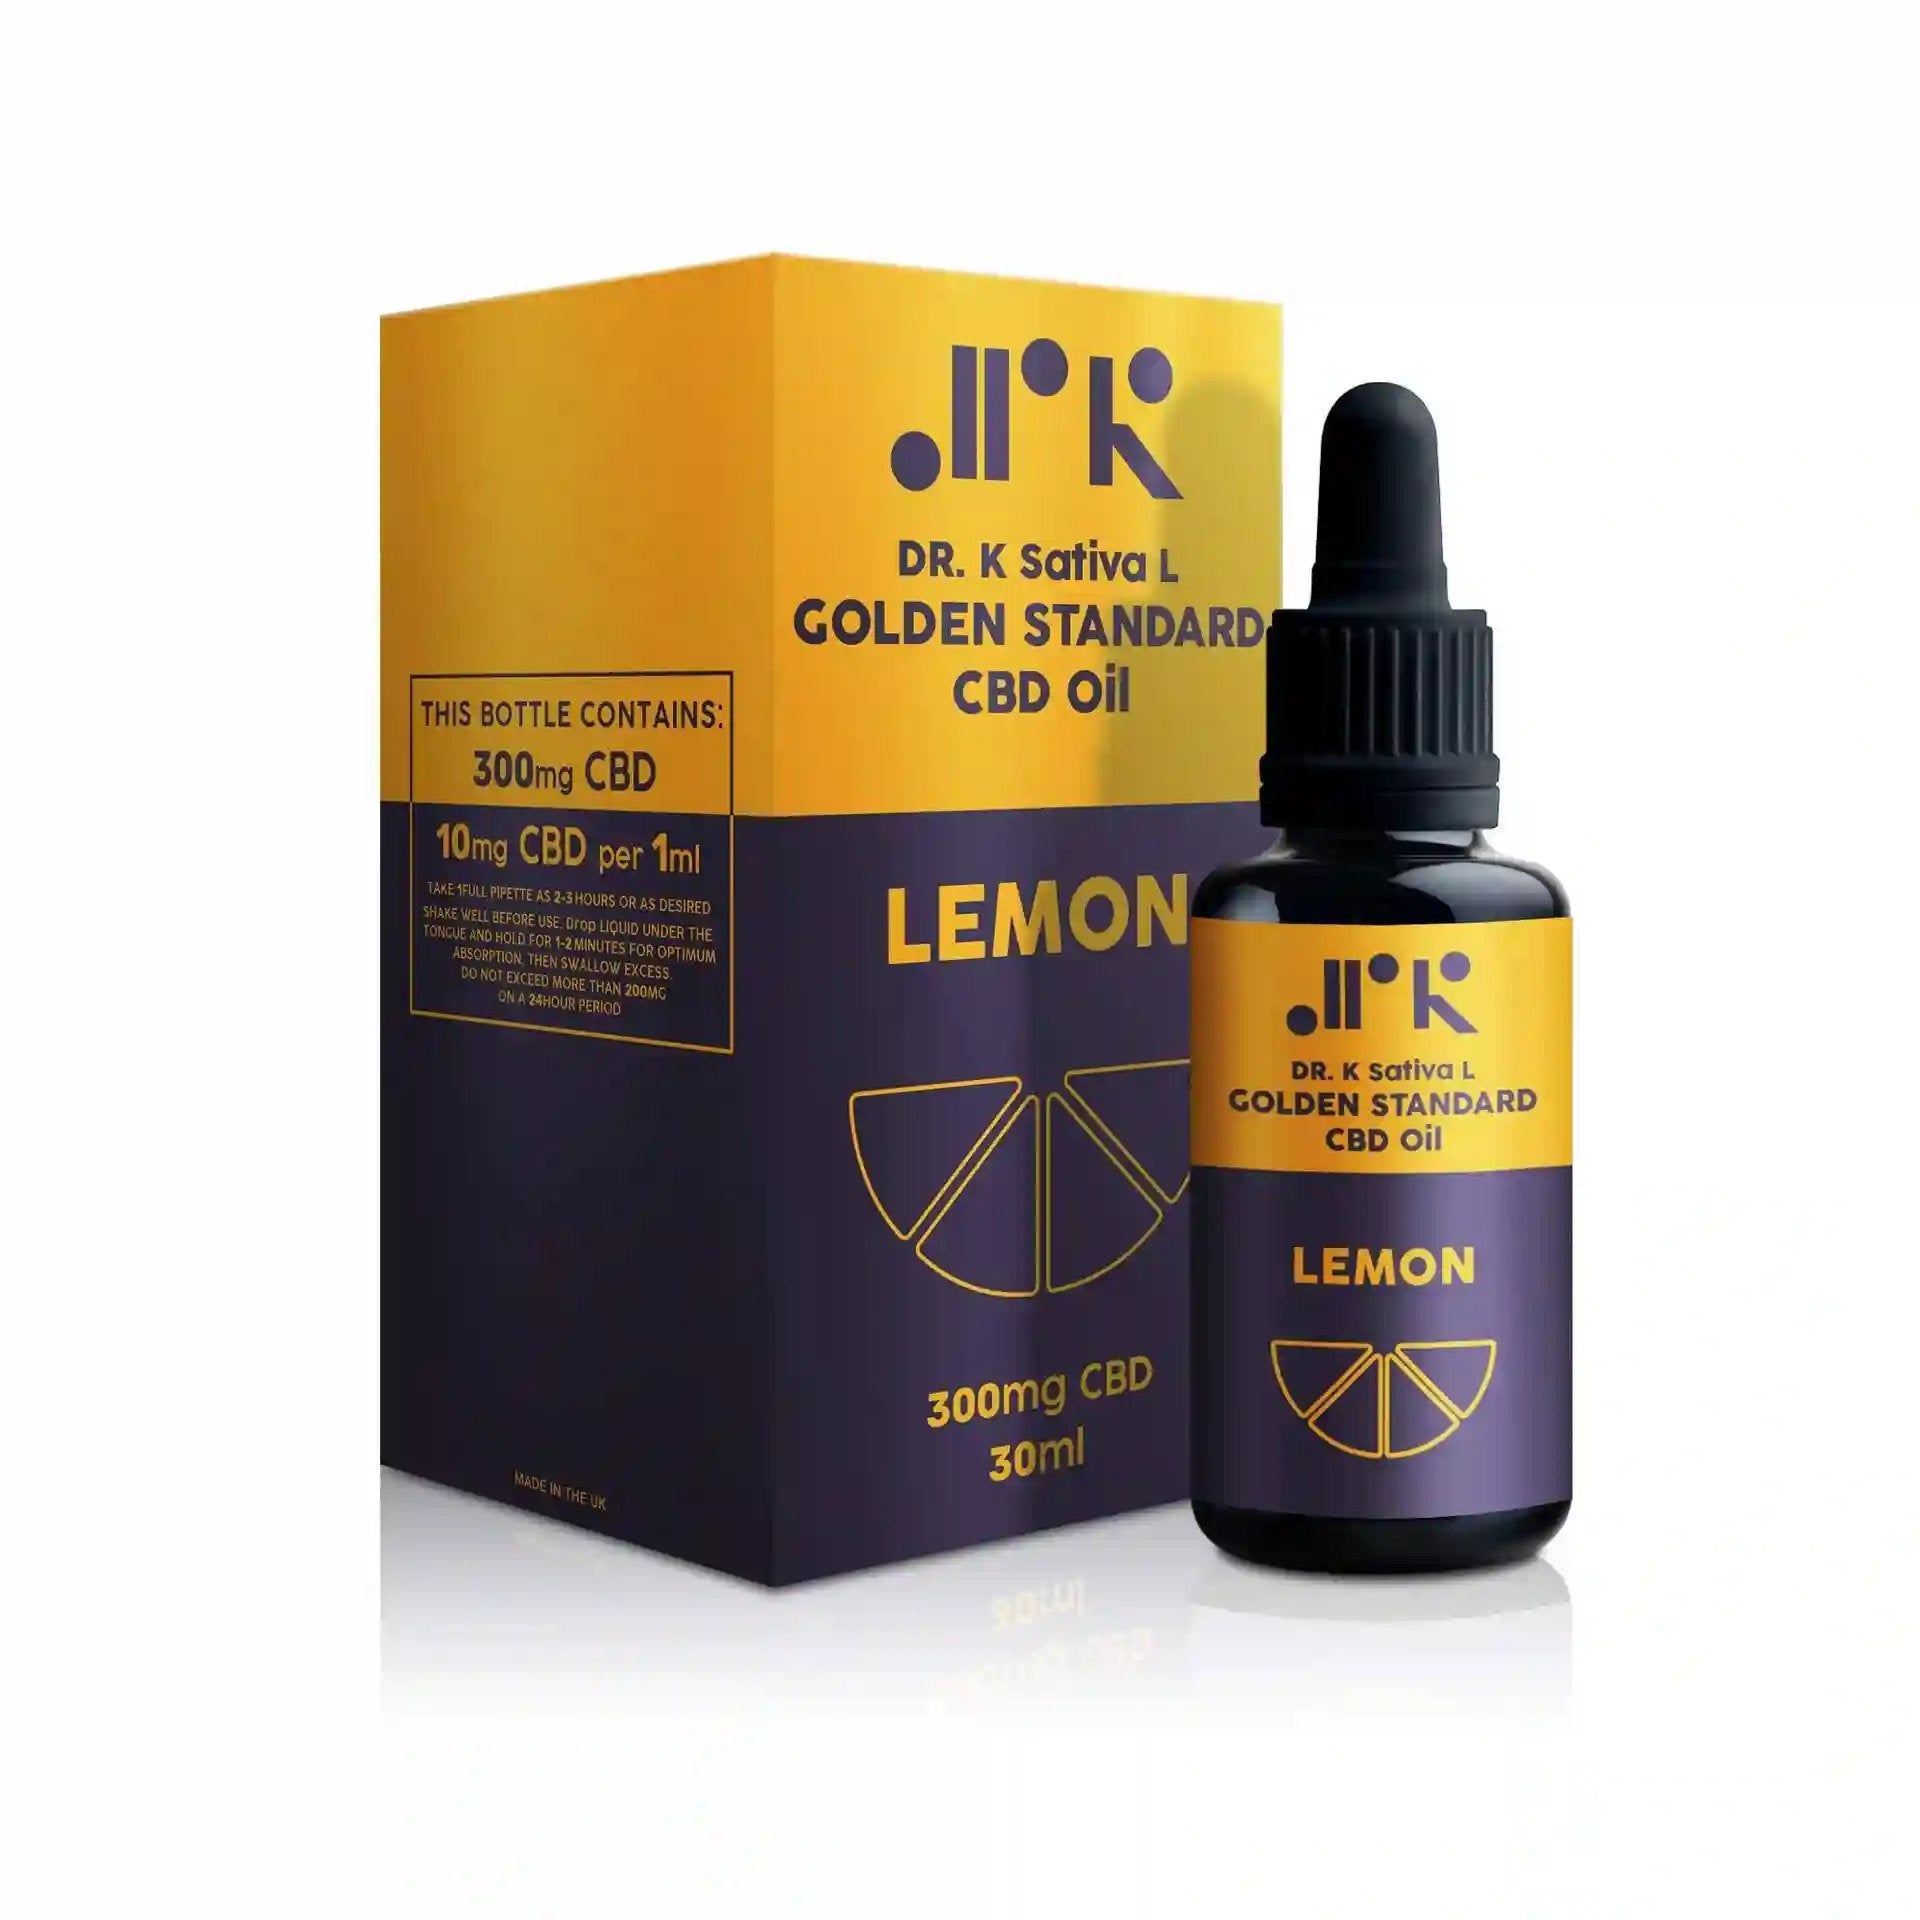 Lemon Golden Standard CBD Oil